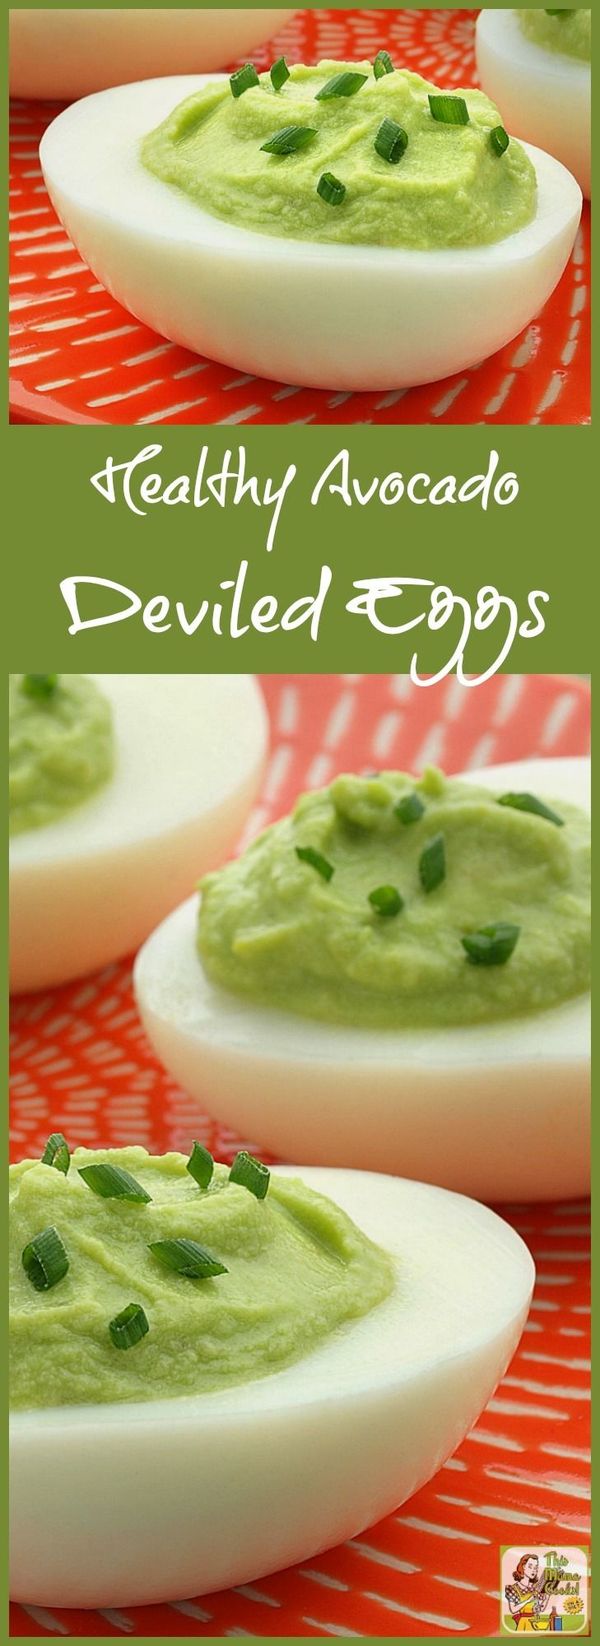 Healthy Avocado Deviled Eggs